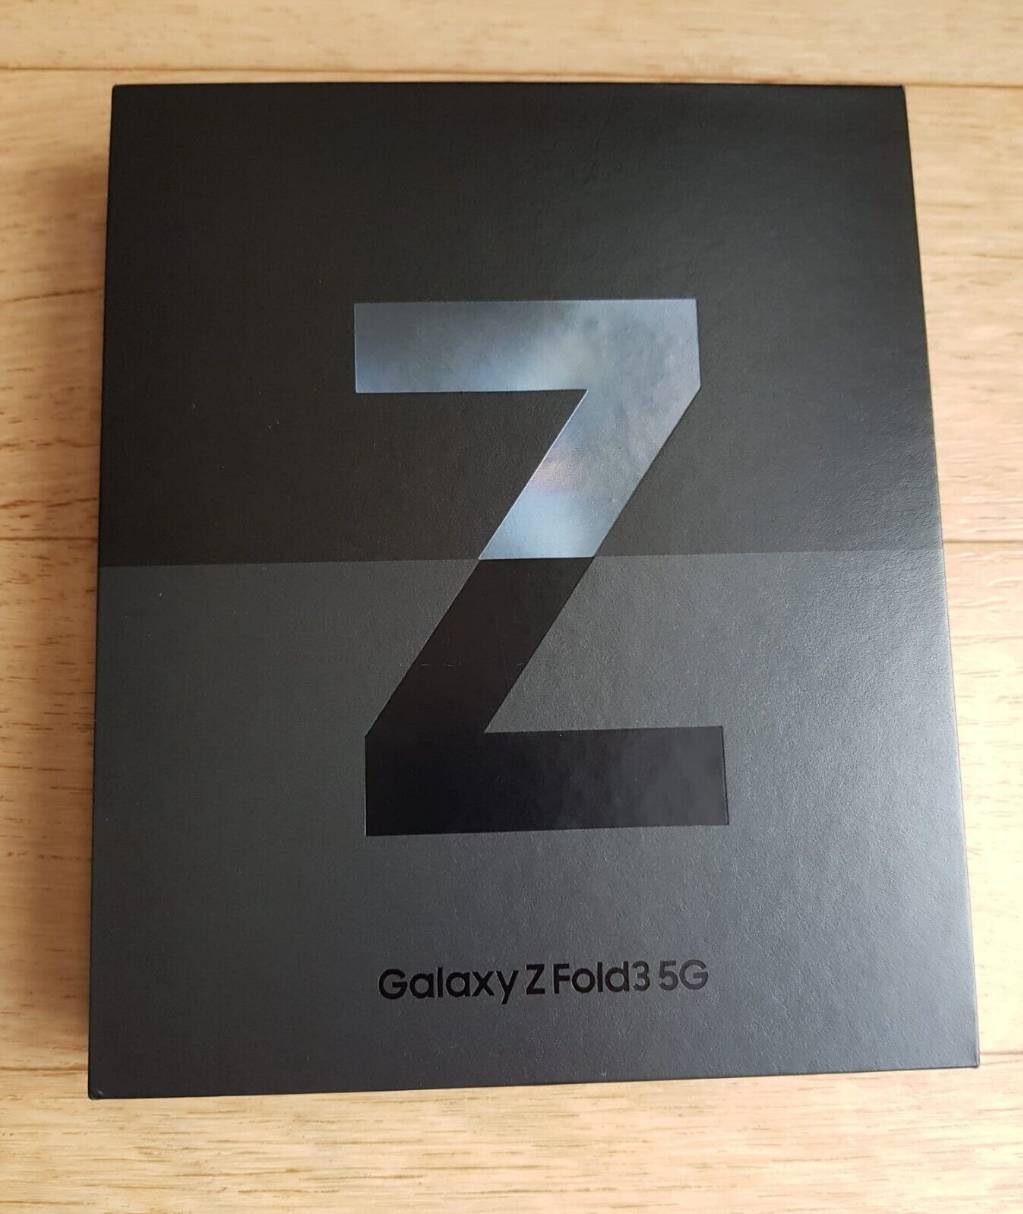 Samsung Galaxy Z Fold3 - 5G - 256GB.jpg